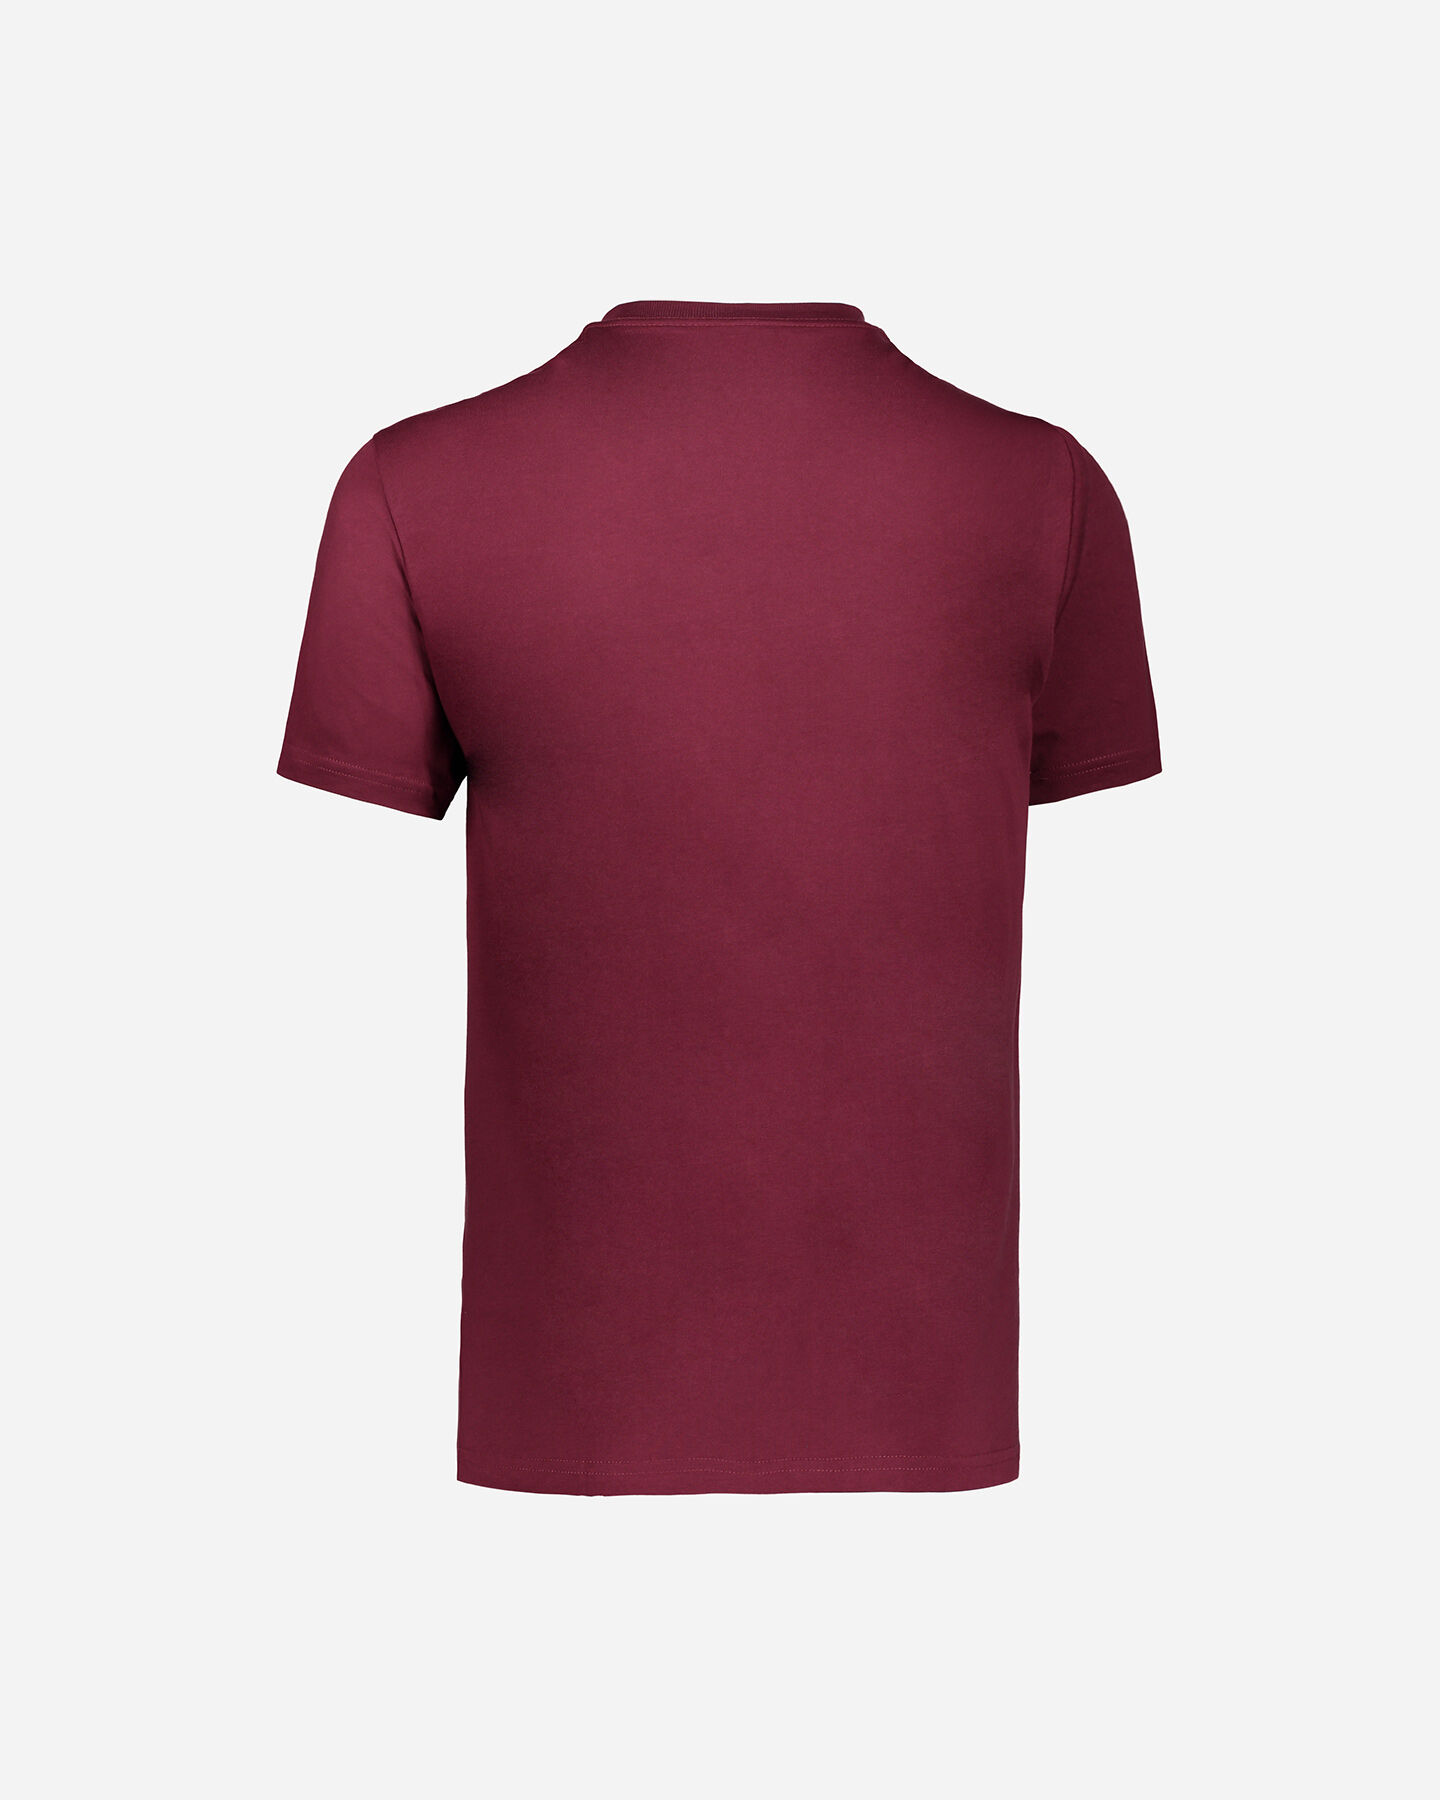  T-Shirt VANS MC CLASSIC M S4027416|BORDEAUX|XS scatto 1